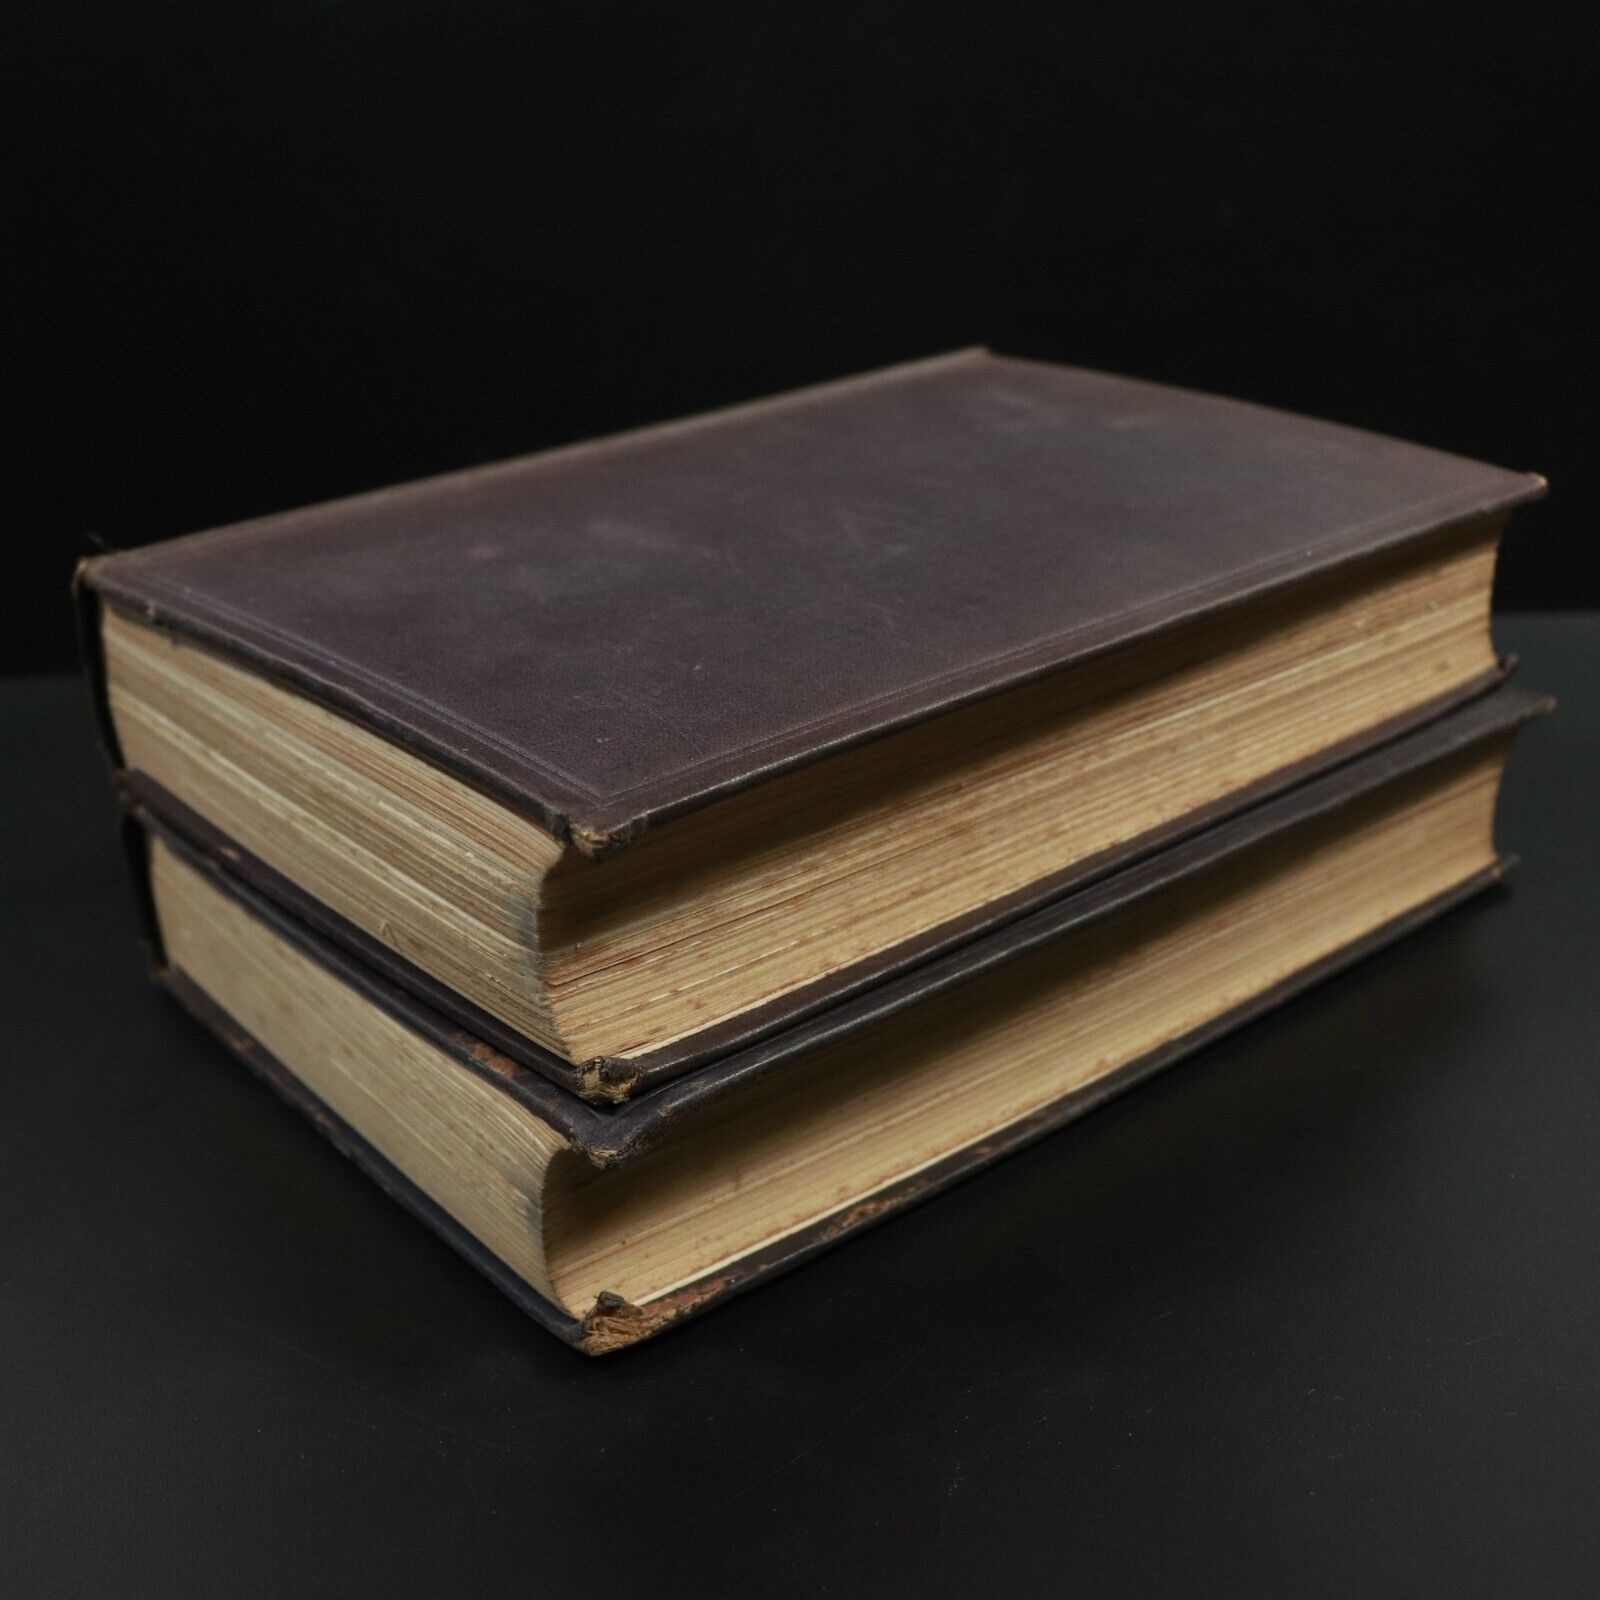 1925 2vol The Farington Diary by Joseph Farington Antique British History Books